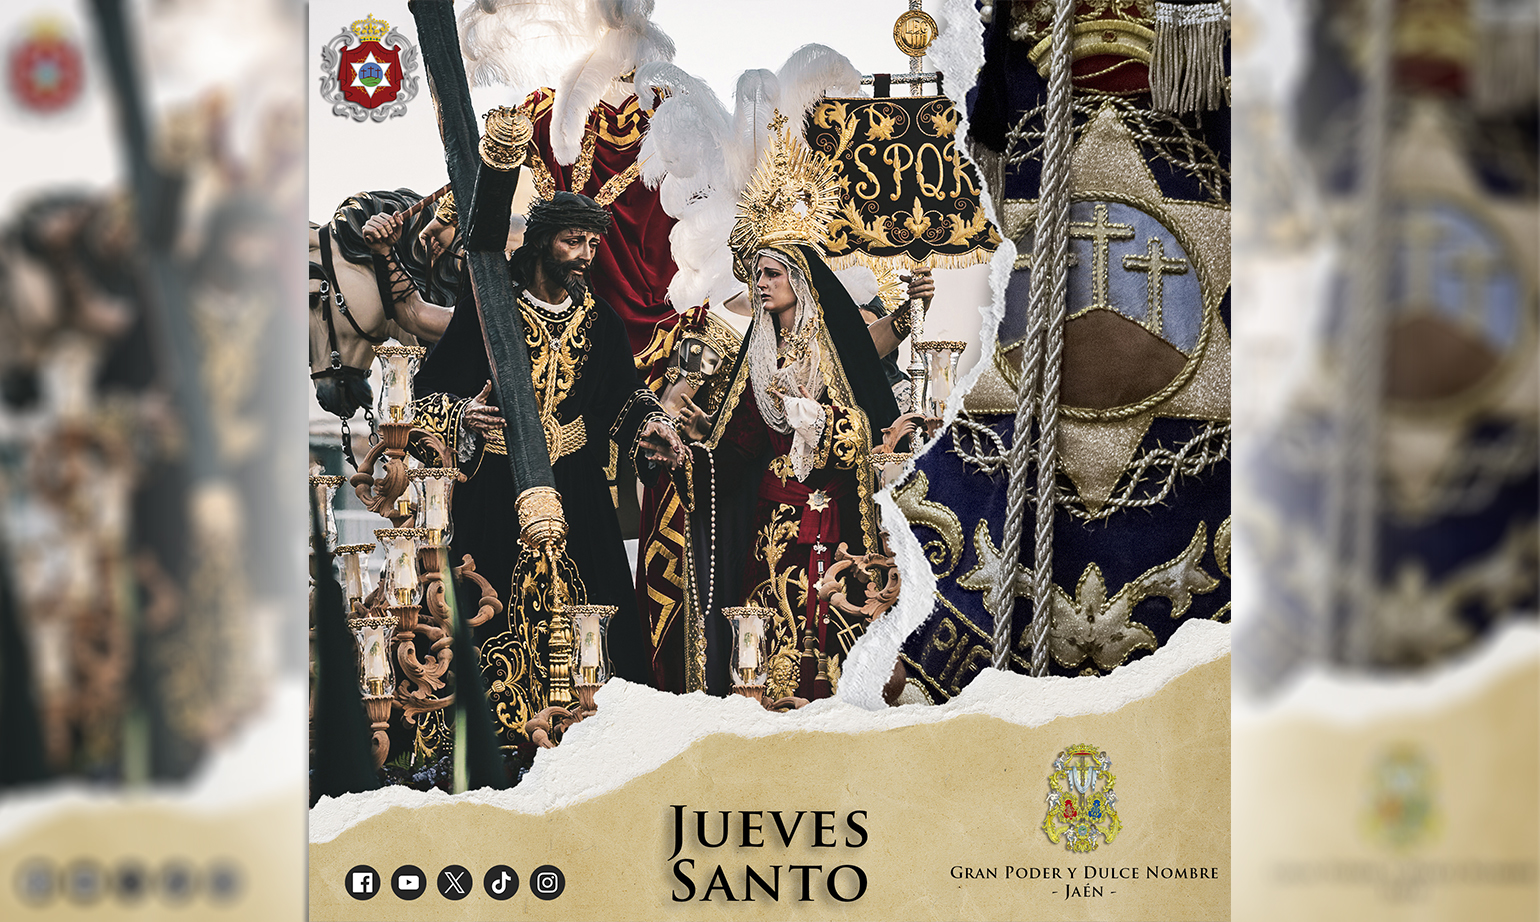 Nuestra música seguirá siendo la banda sonora de Gran Poder y Dulce Nombre de Jaén